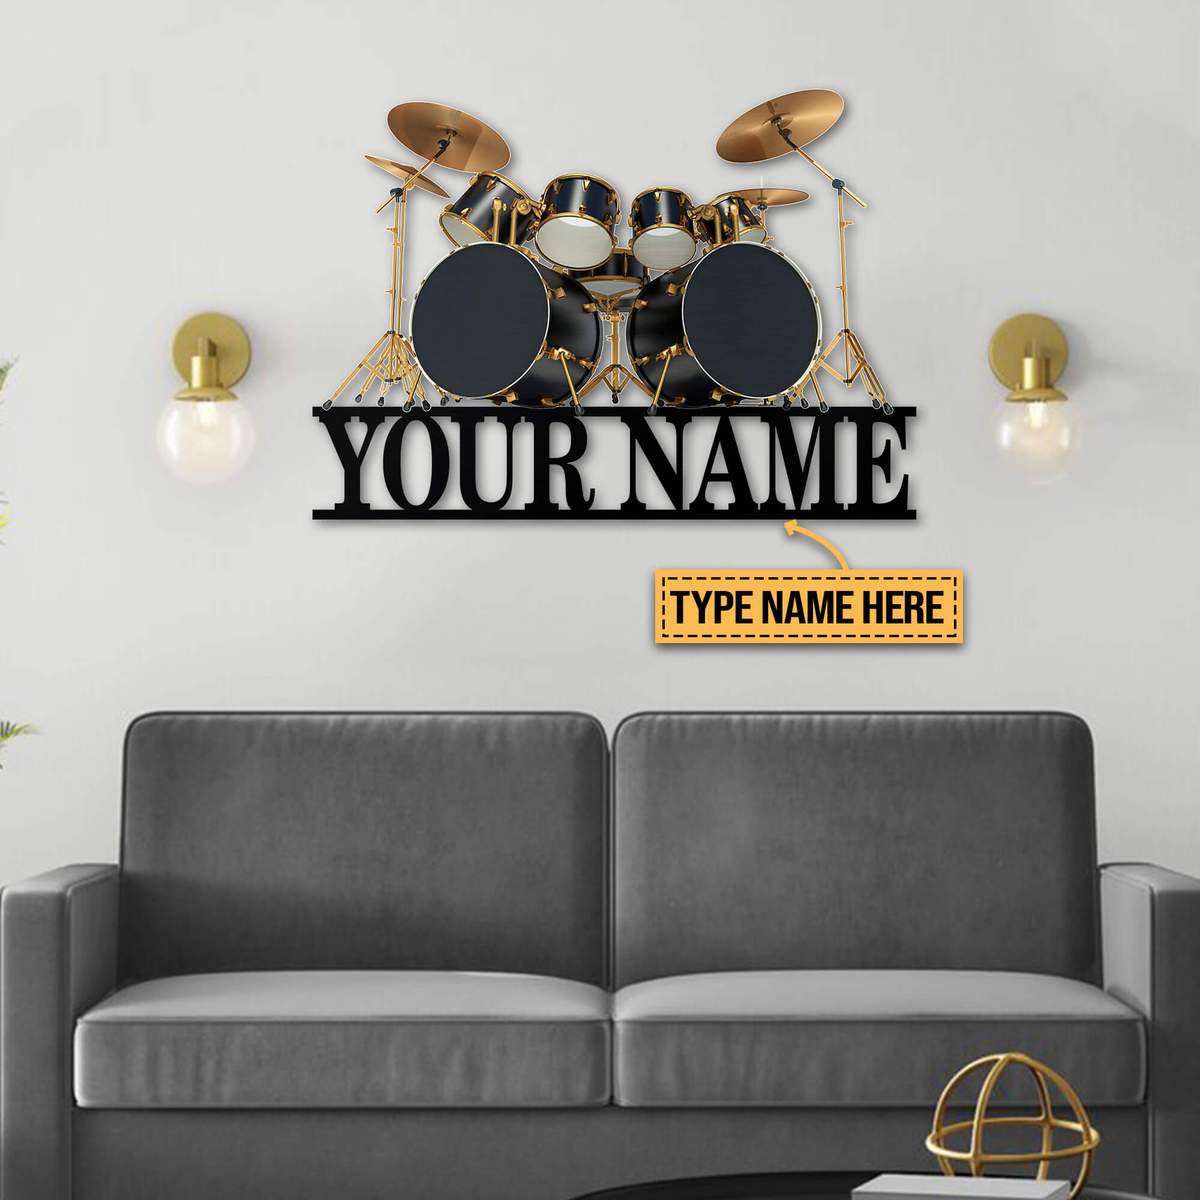 Drum kit custom personalized name metal sign 11